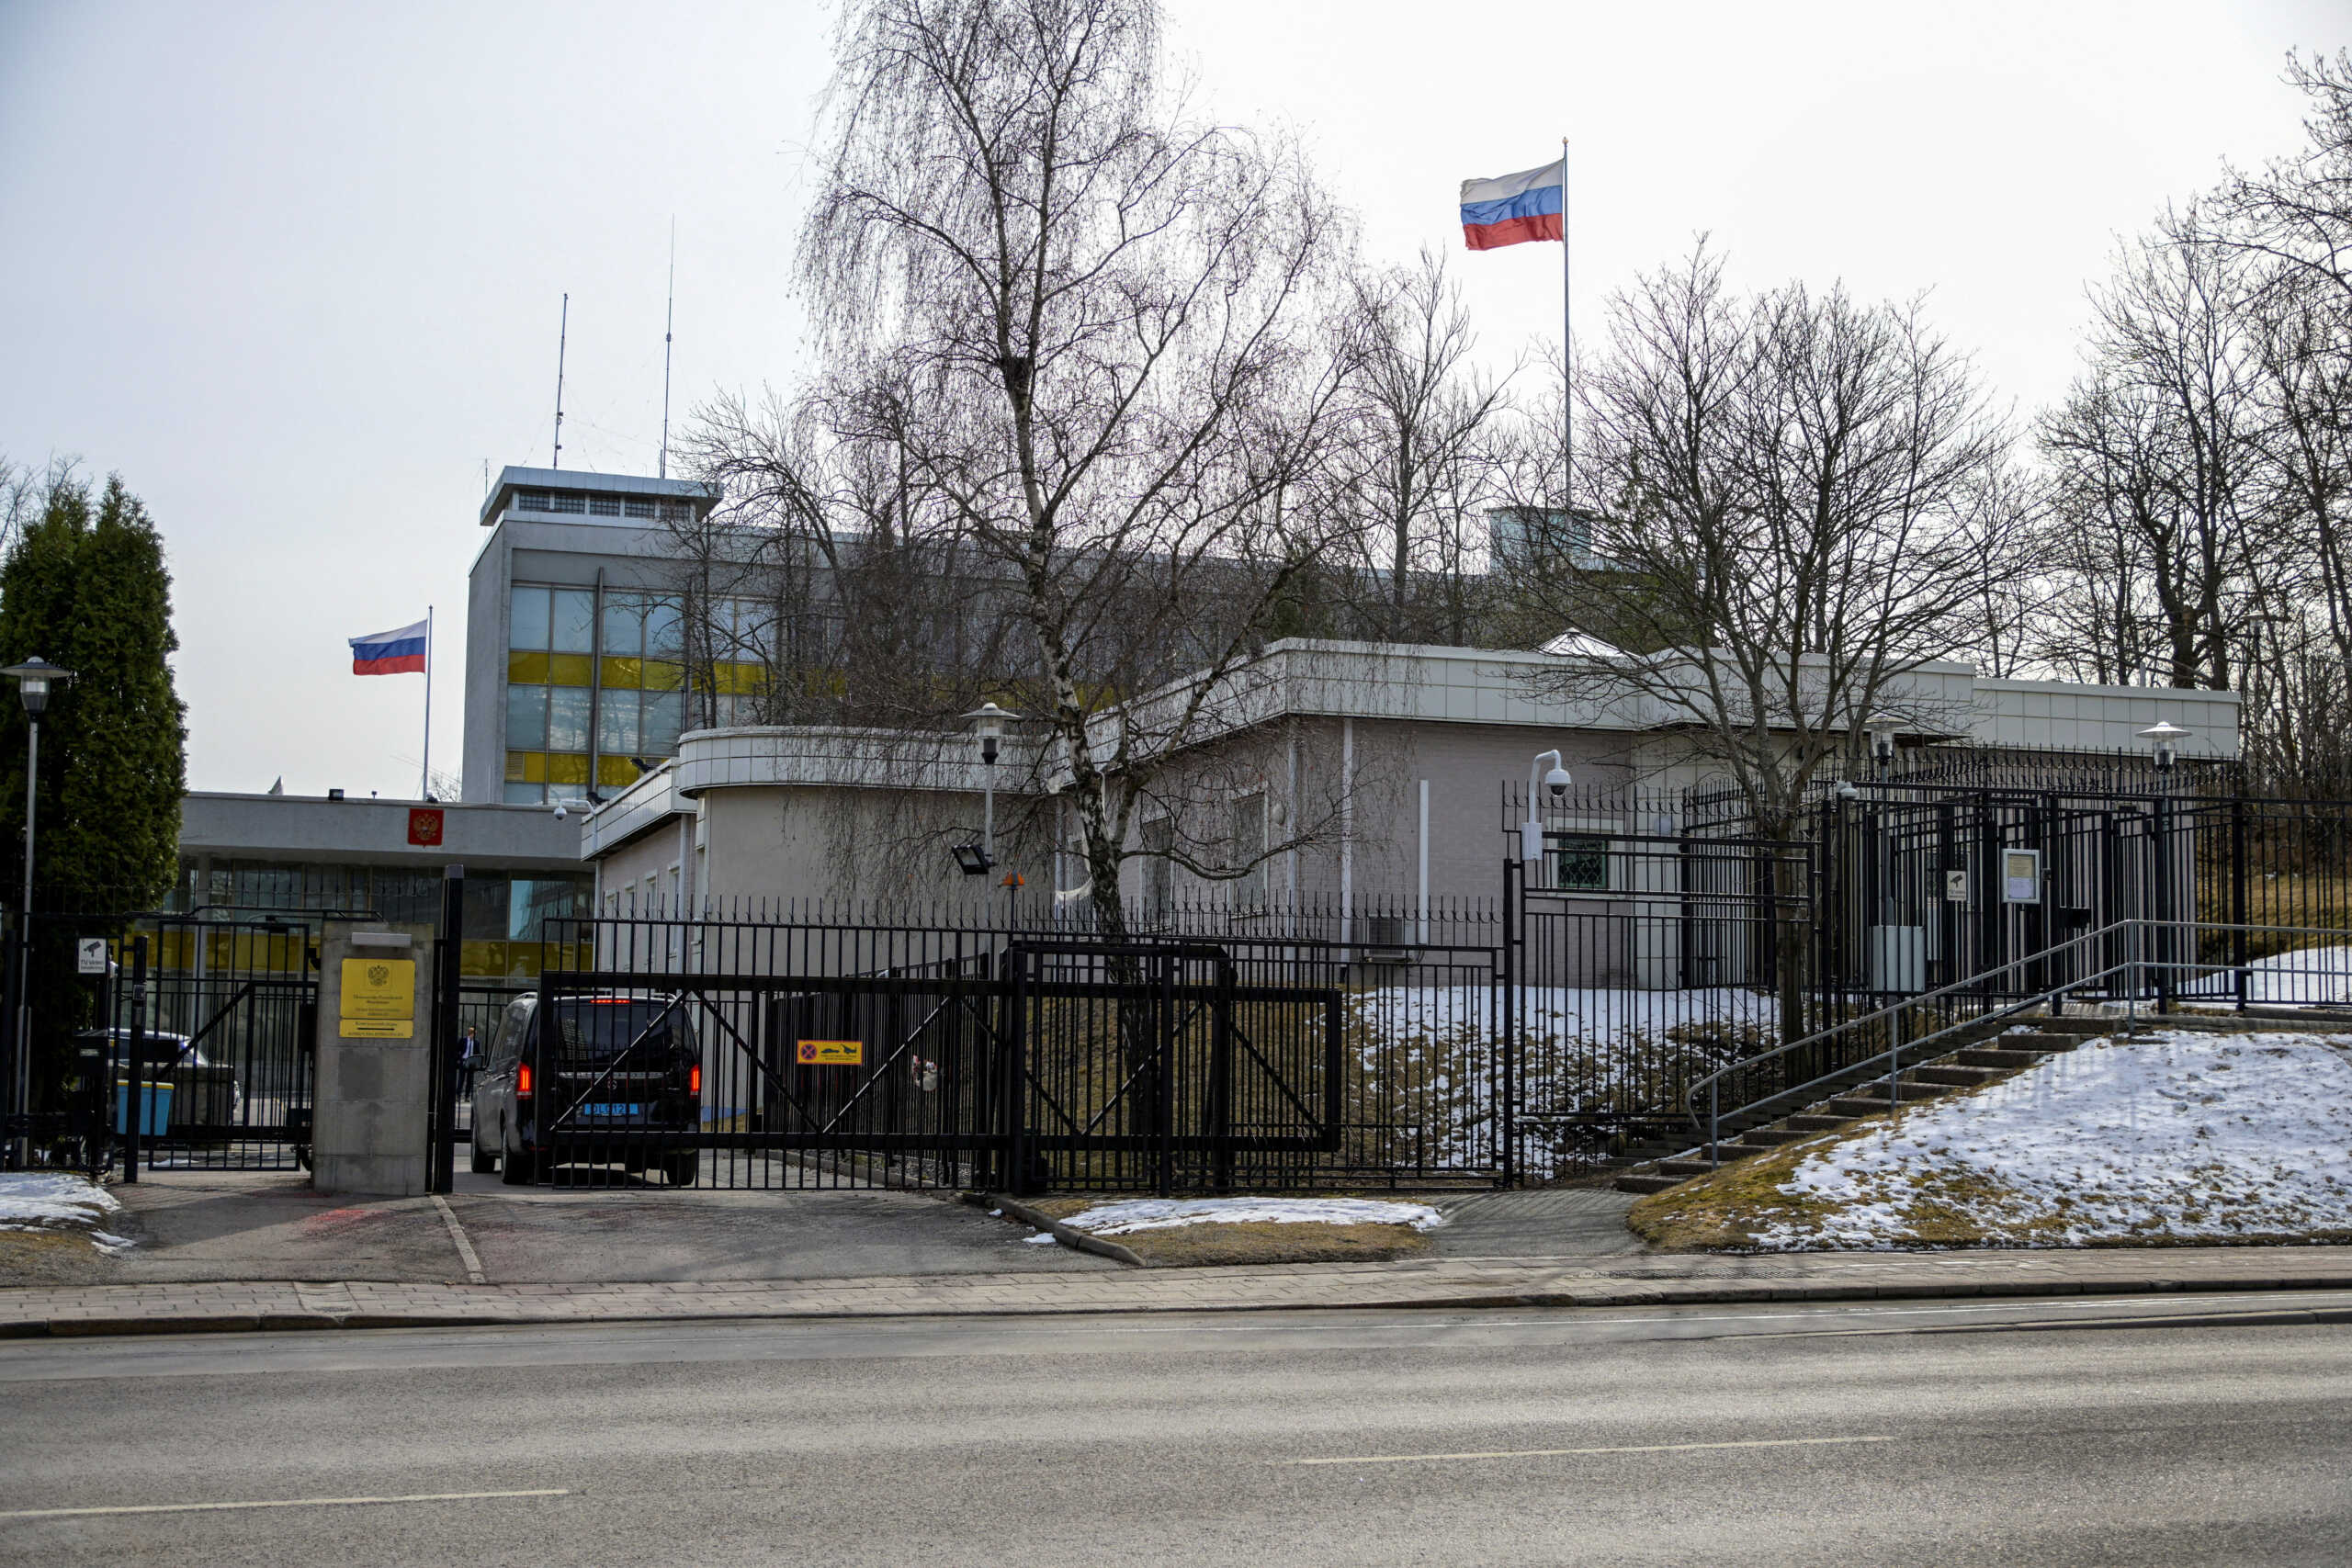 Αποκάλυψη σκανδιναβικών καναλιών: Ρώσοι κατάσκοποι δρουν υπό τον μανδύα των υπαλλήλων πρεσβειών